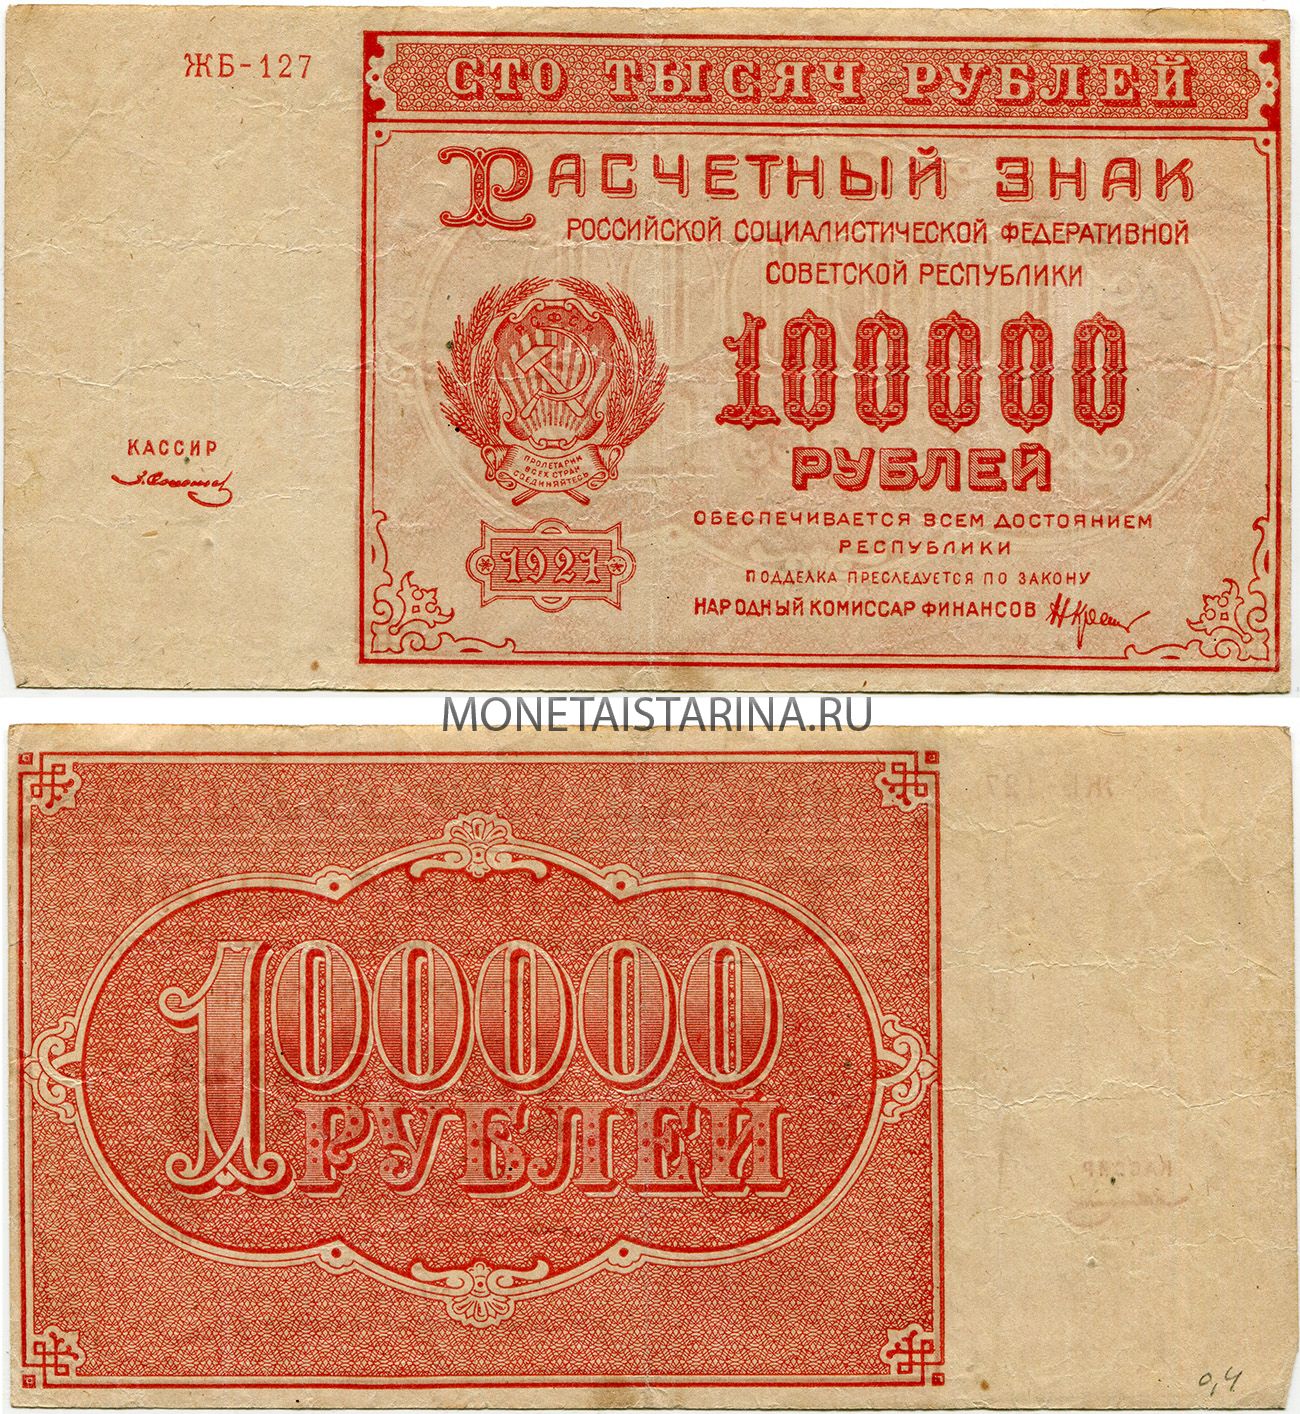 100.000 тысяч. Рубль РСФСР 1921. Банкнота 100000 рублей. 100000 Рублей 1921 года. СТО тысяч рублей банкнота.